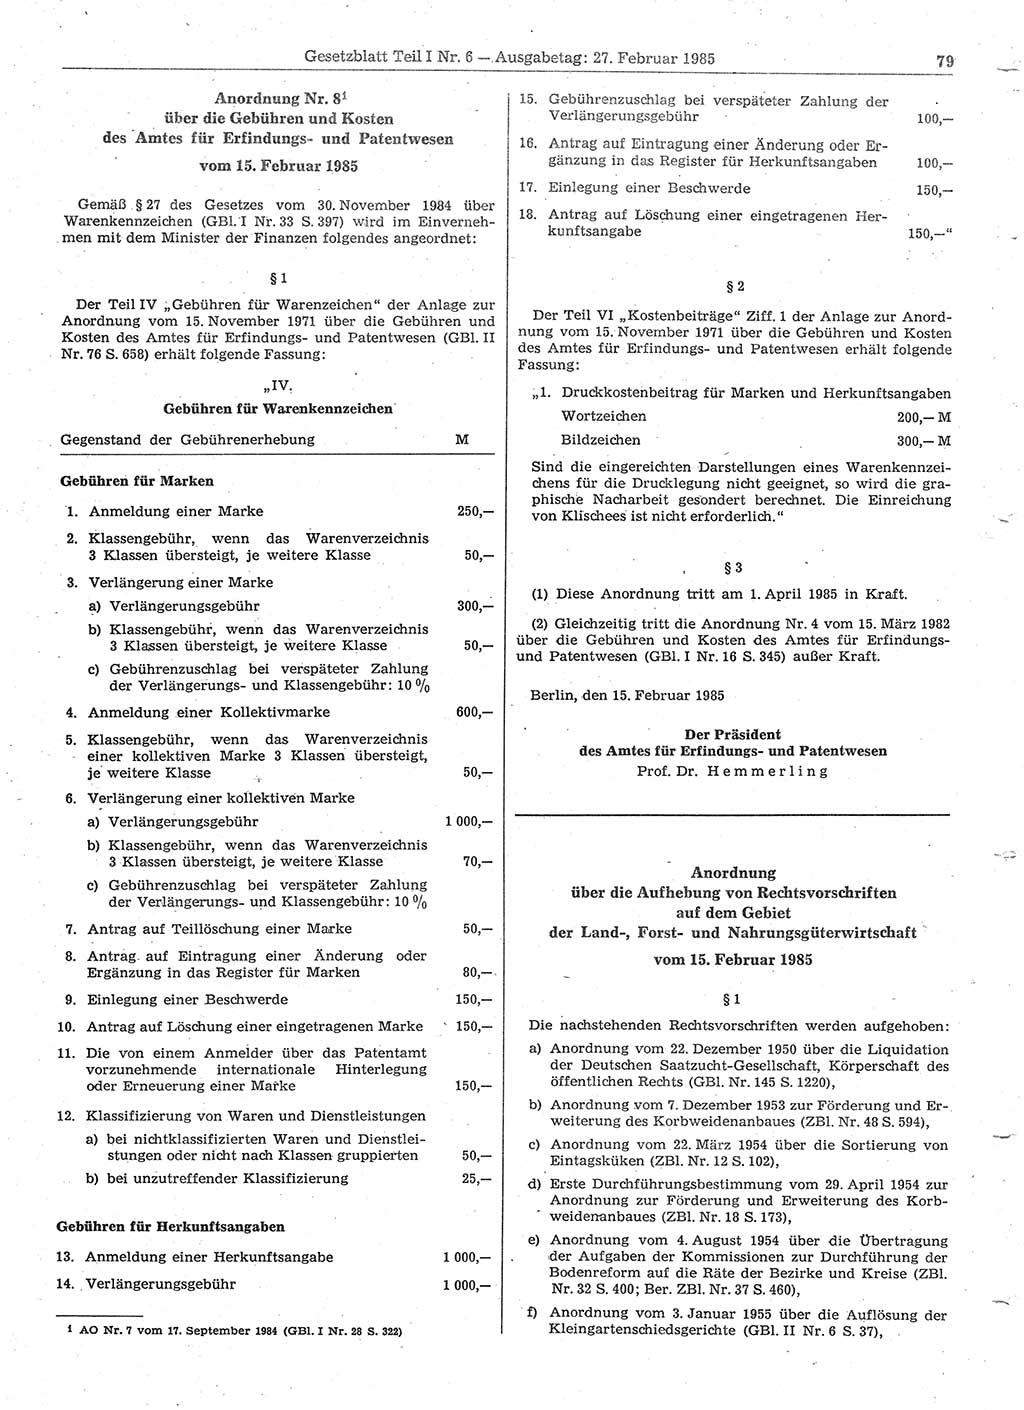 Gesetzblatt (GBl.) der Deutschen Demokratischen Republik (DDR) Teil Ⅰ 1985, Seite 79 (GBl. DDR Ⅰ 1985, S. 79)